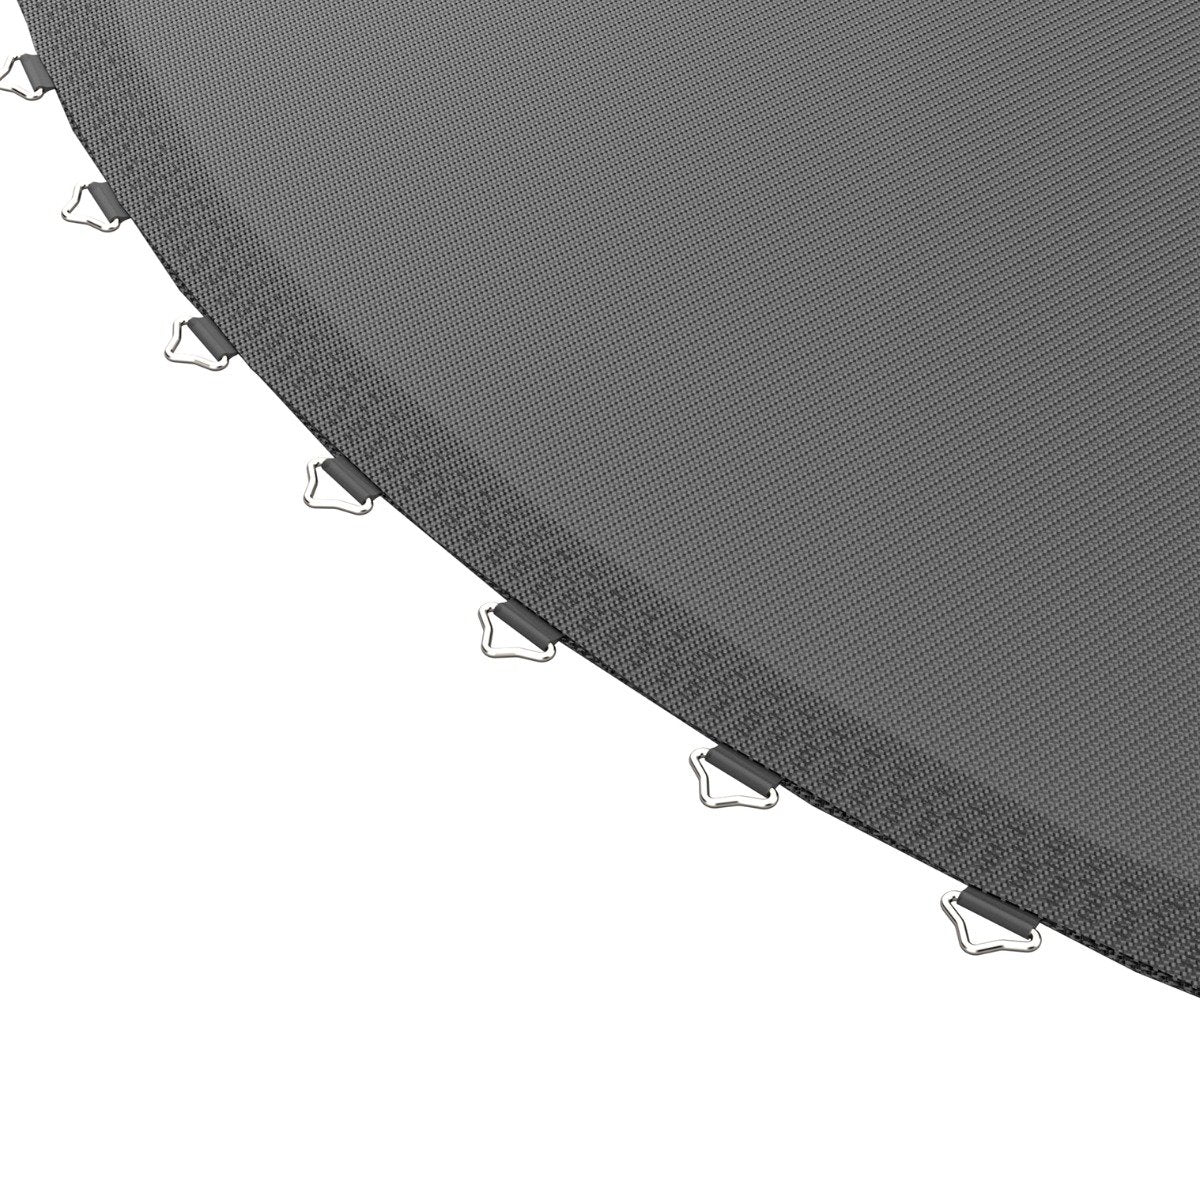 ACON Air round trampoline mat detail